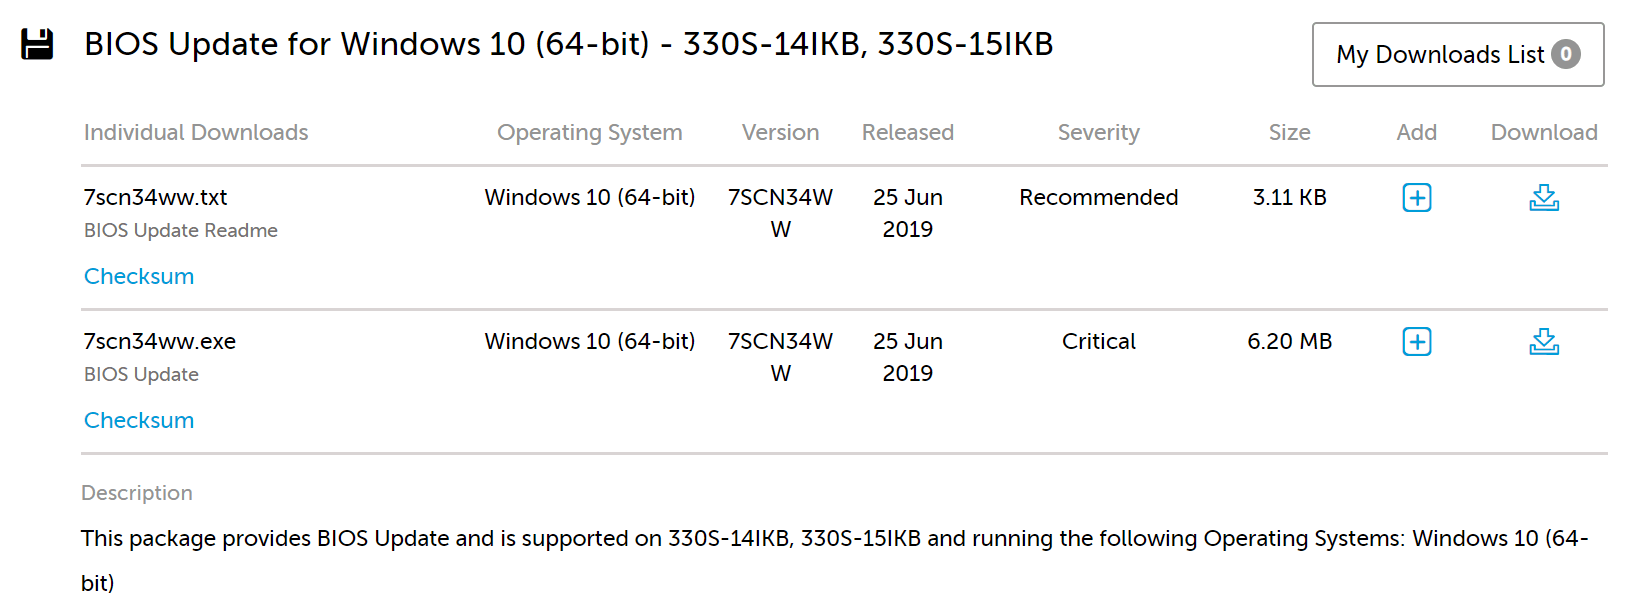 popraviti pogrešku SSD m2